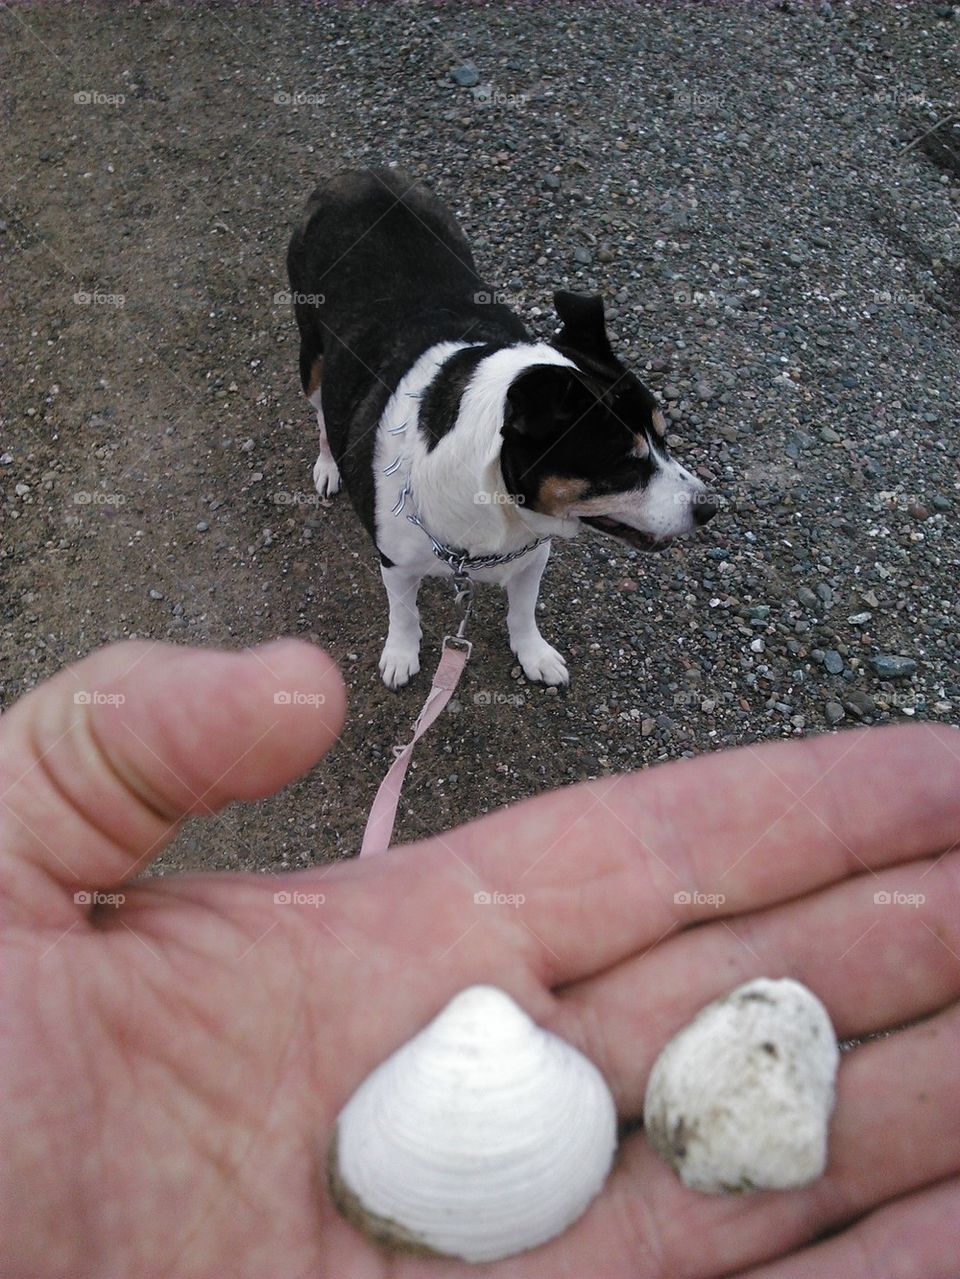 Dog and sea shells